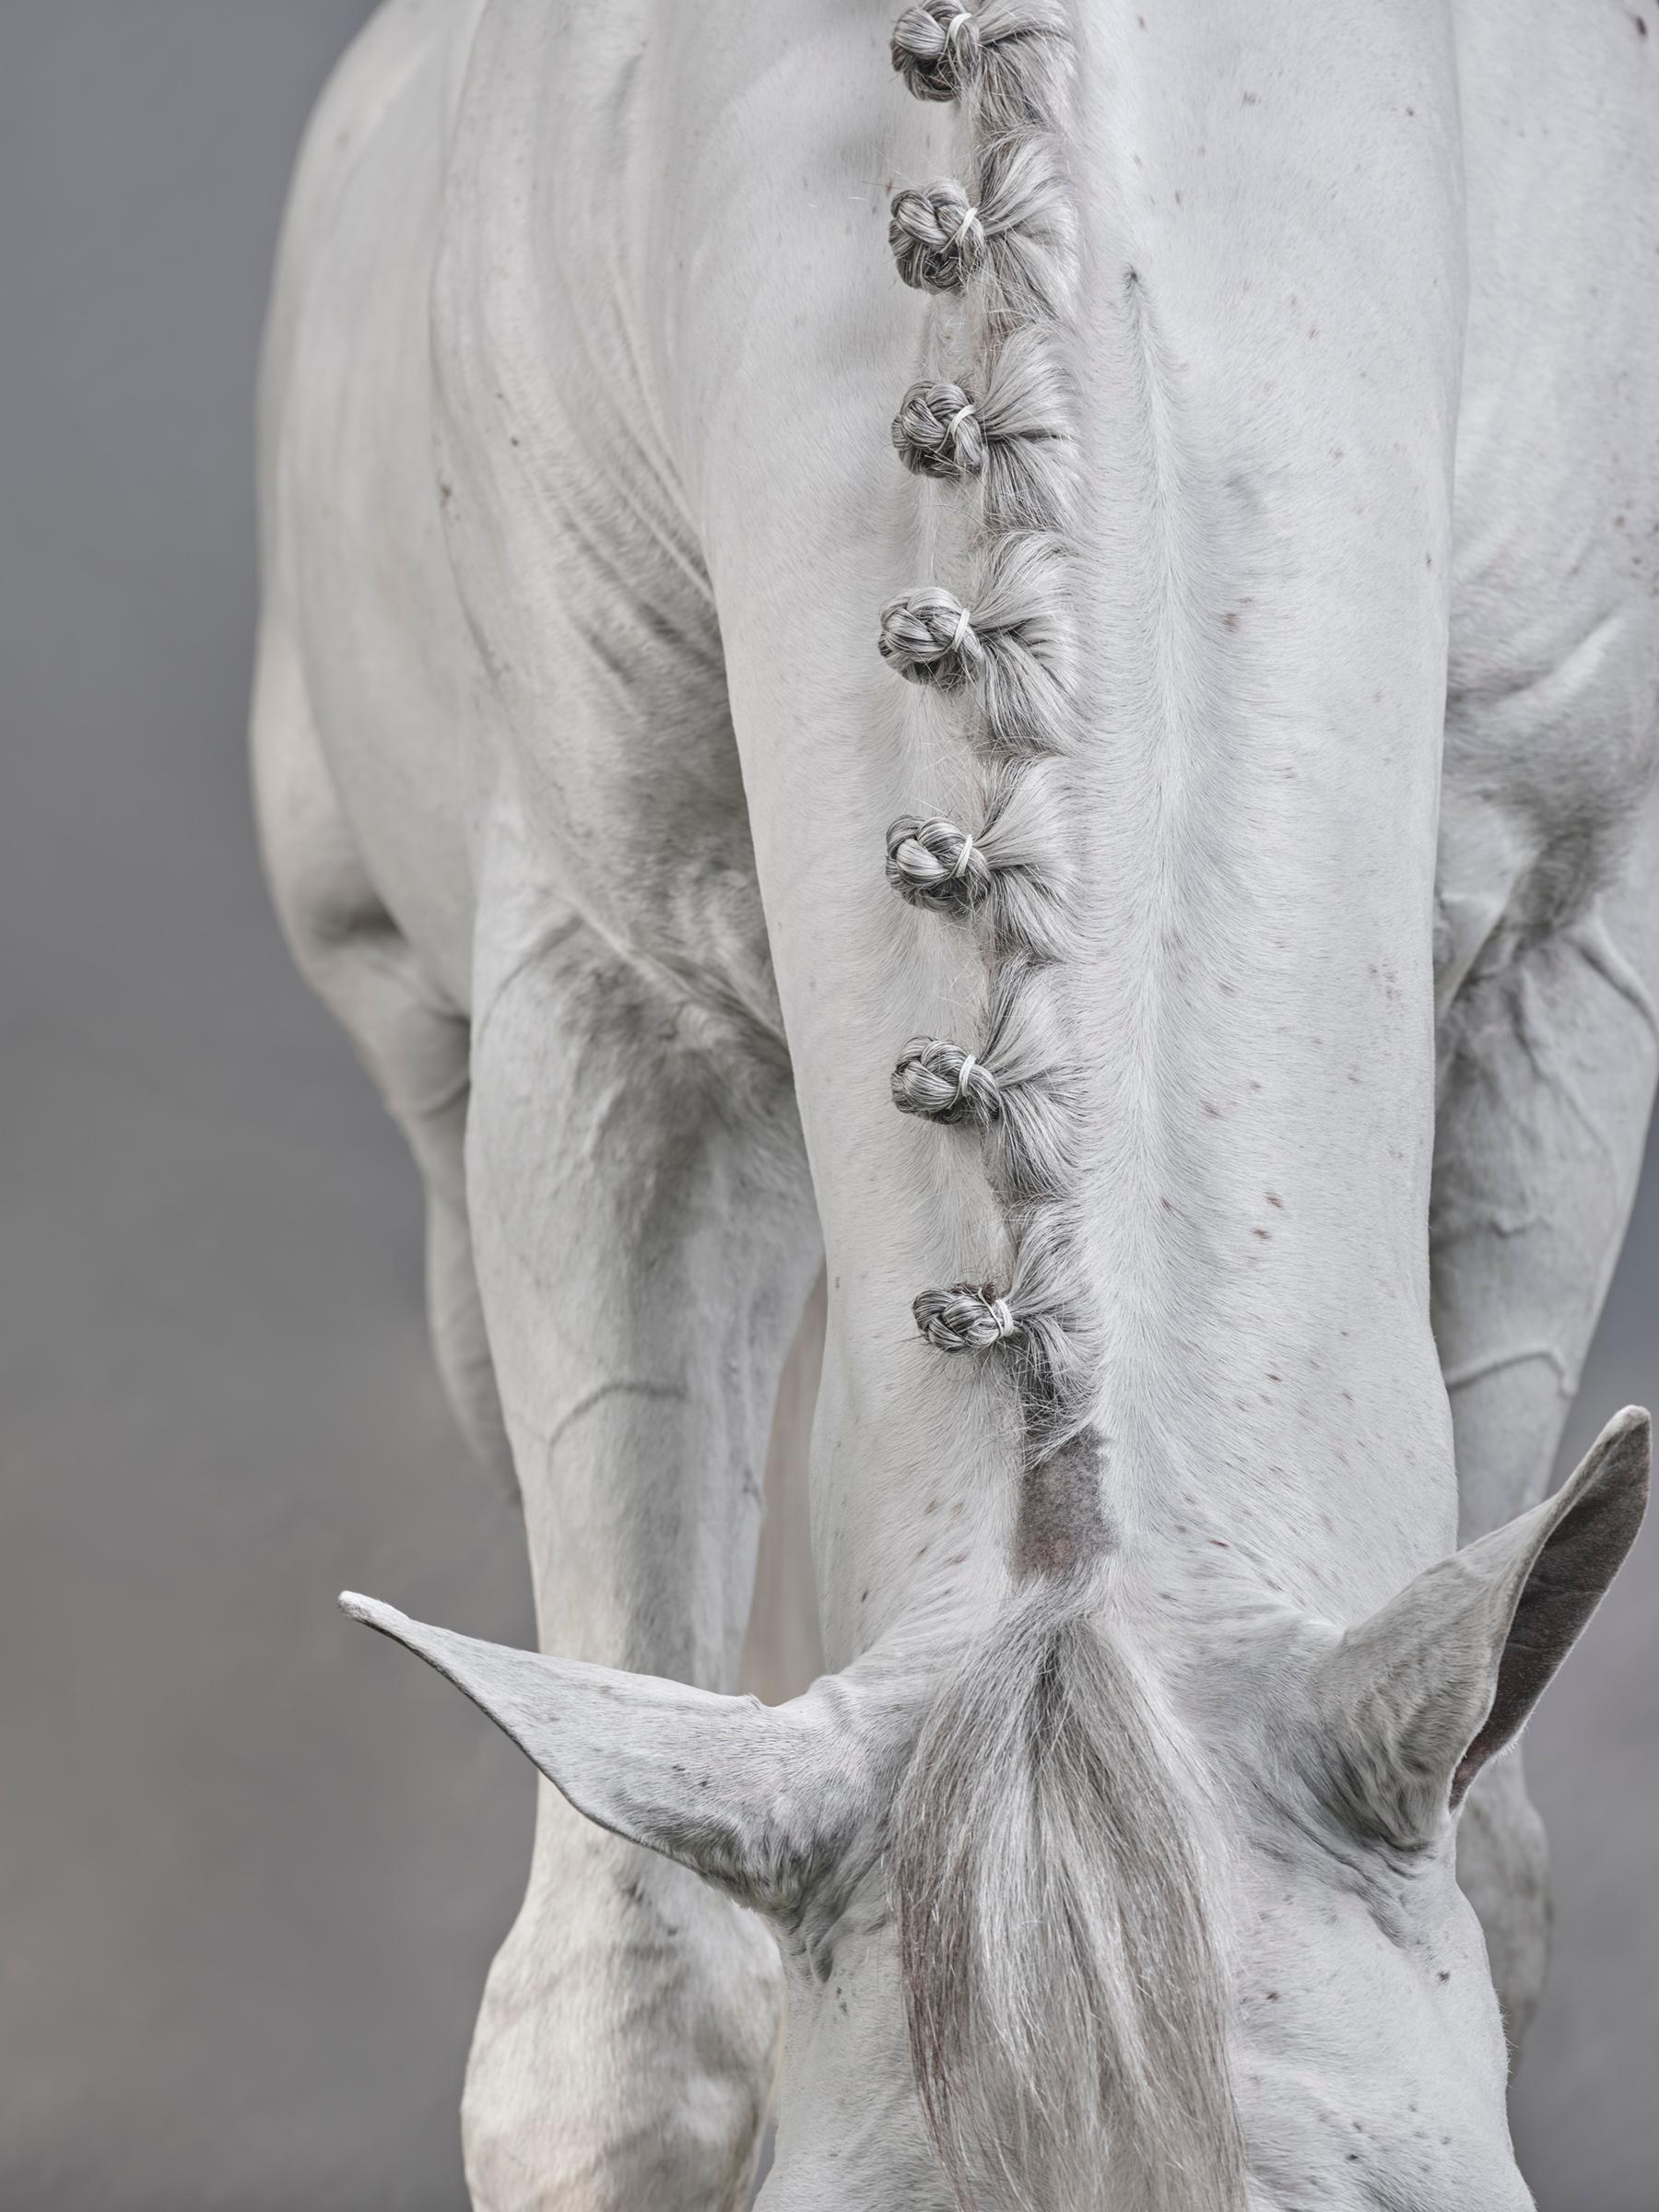 Casper III, 2019 von Juan Lamarca
Hochwertiges archivfestes Baumwollpapier
Bildgröße: 40 x 30 Zoll
Ausgabe 2 von 10 plus 2 AP
Ungerahmt

Die Horse Series von Juan Lamarca ist eine abstrakte Sammlung von Fotografien, die Hochleistungspferde zeigen.